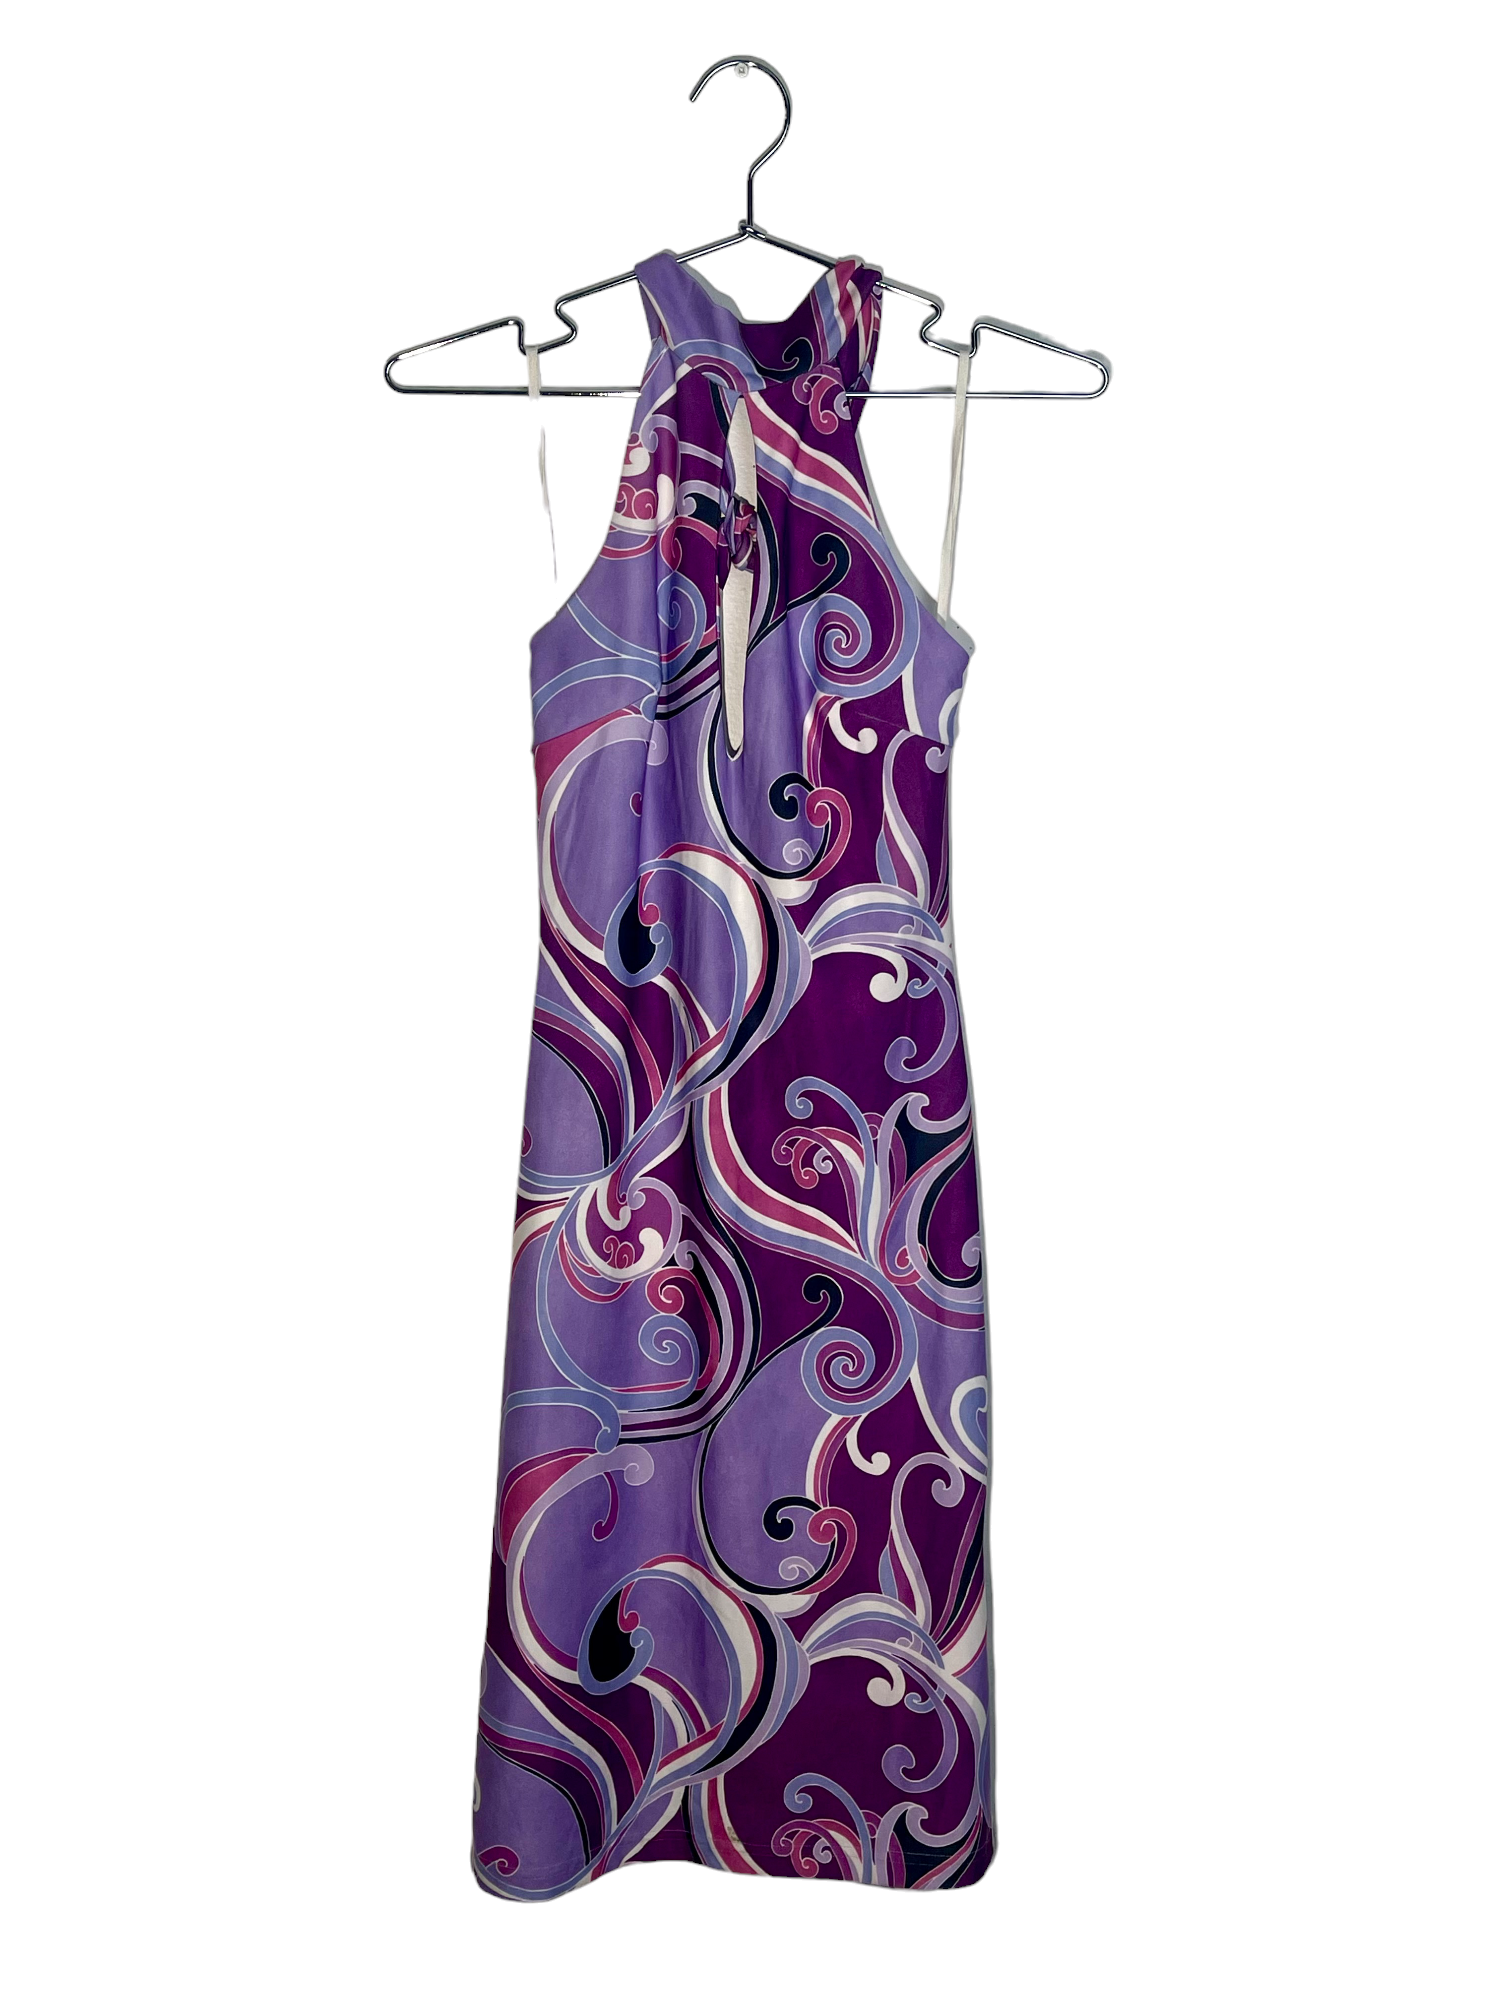 Groovy Purple Halter Dress